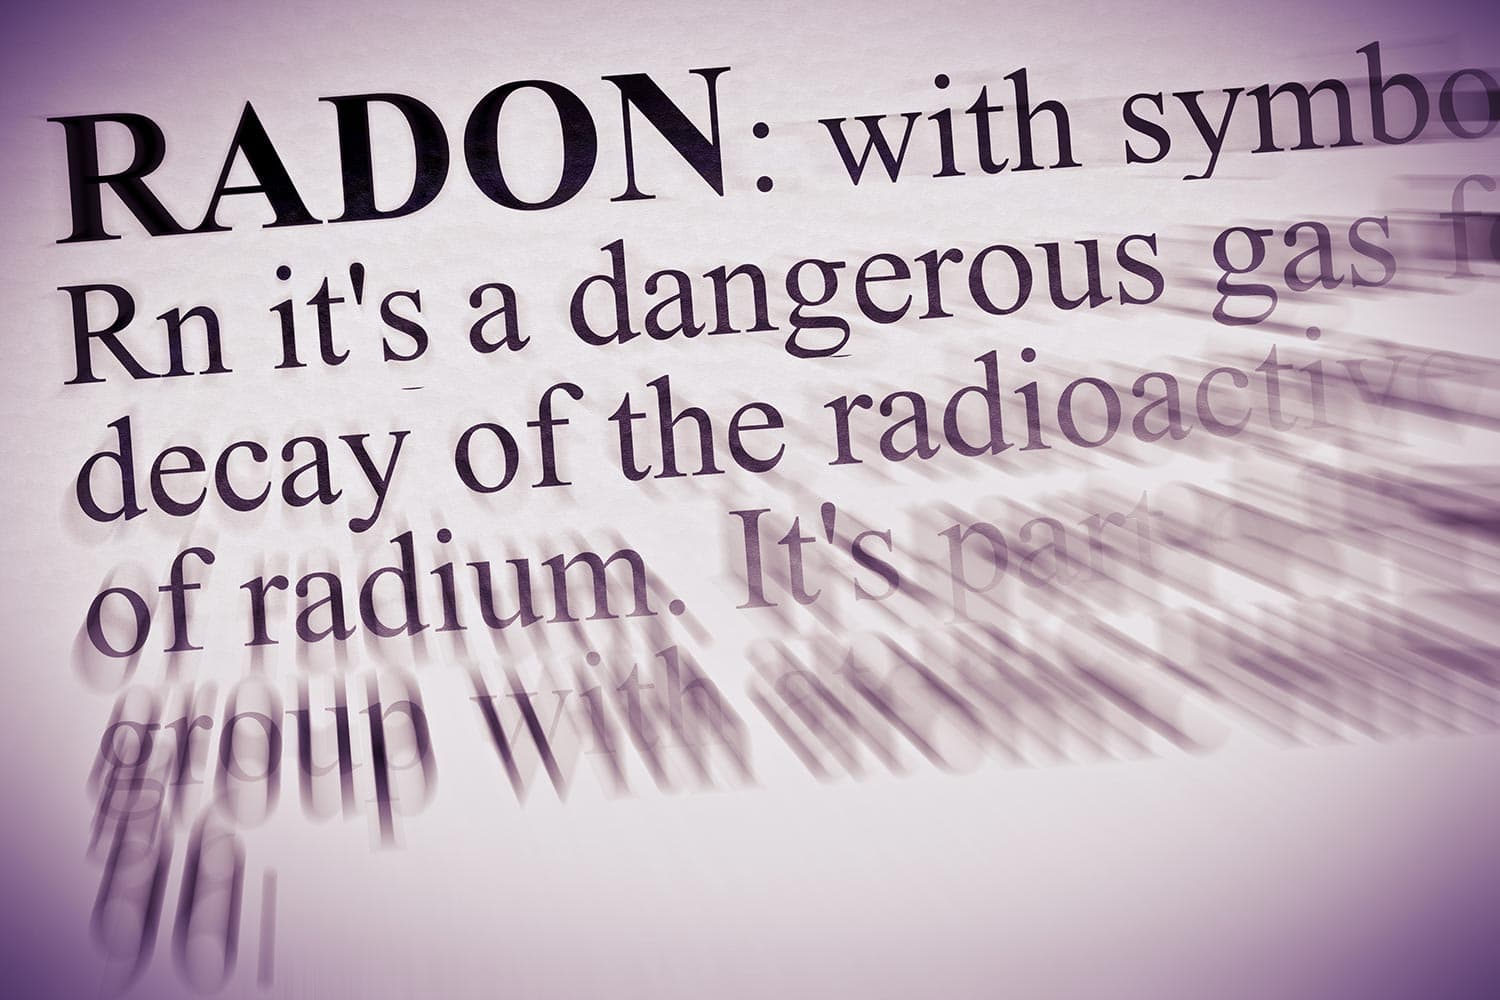 Definition of radon gas